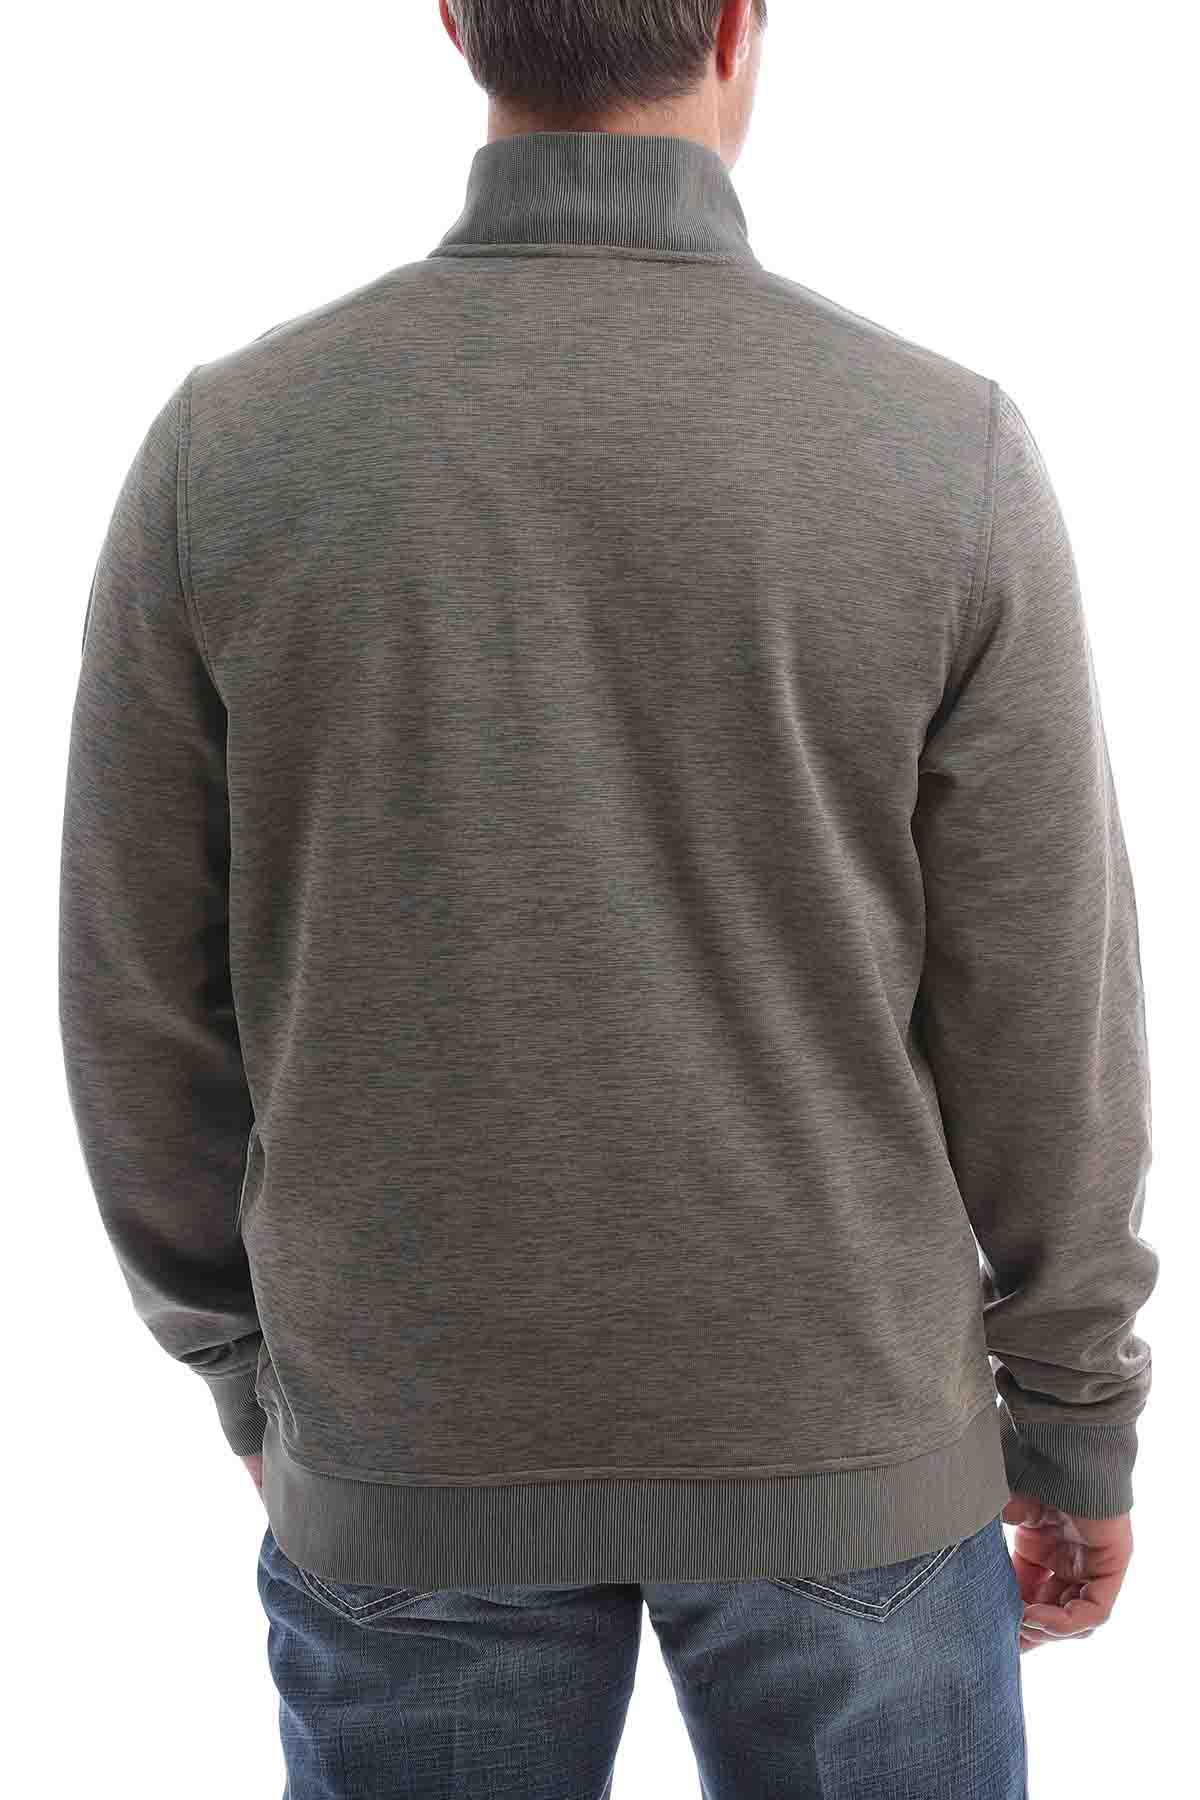 ¼ Zip Pullover Sweater Heather-Khaki